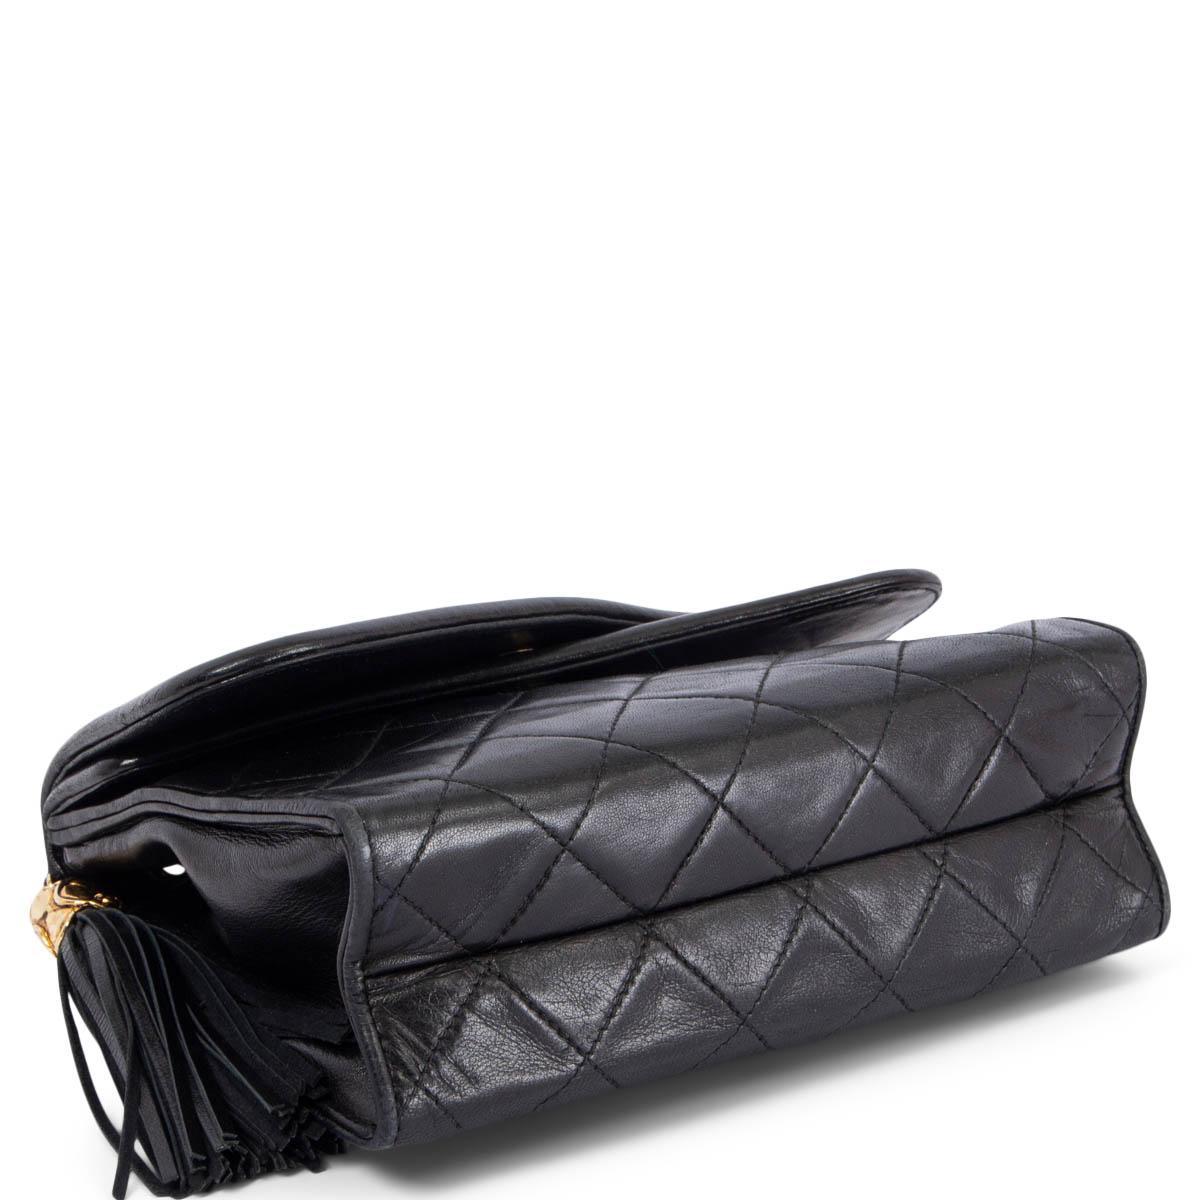 Women's CHANEL black leather CROSSOVER FLAP & TASSEL Shoulder Bag 1989-1991